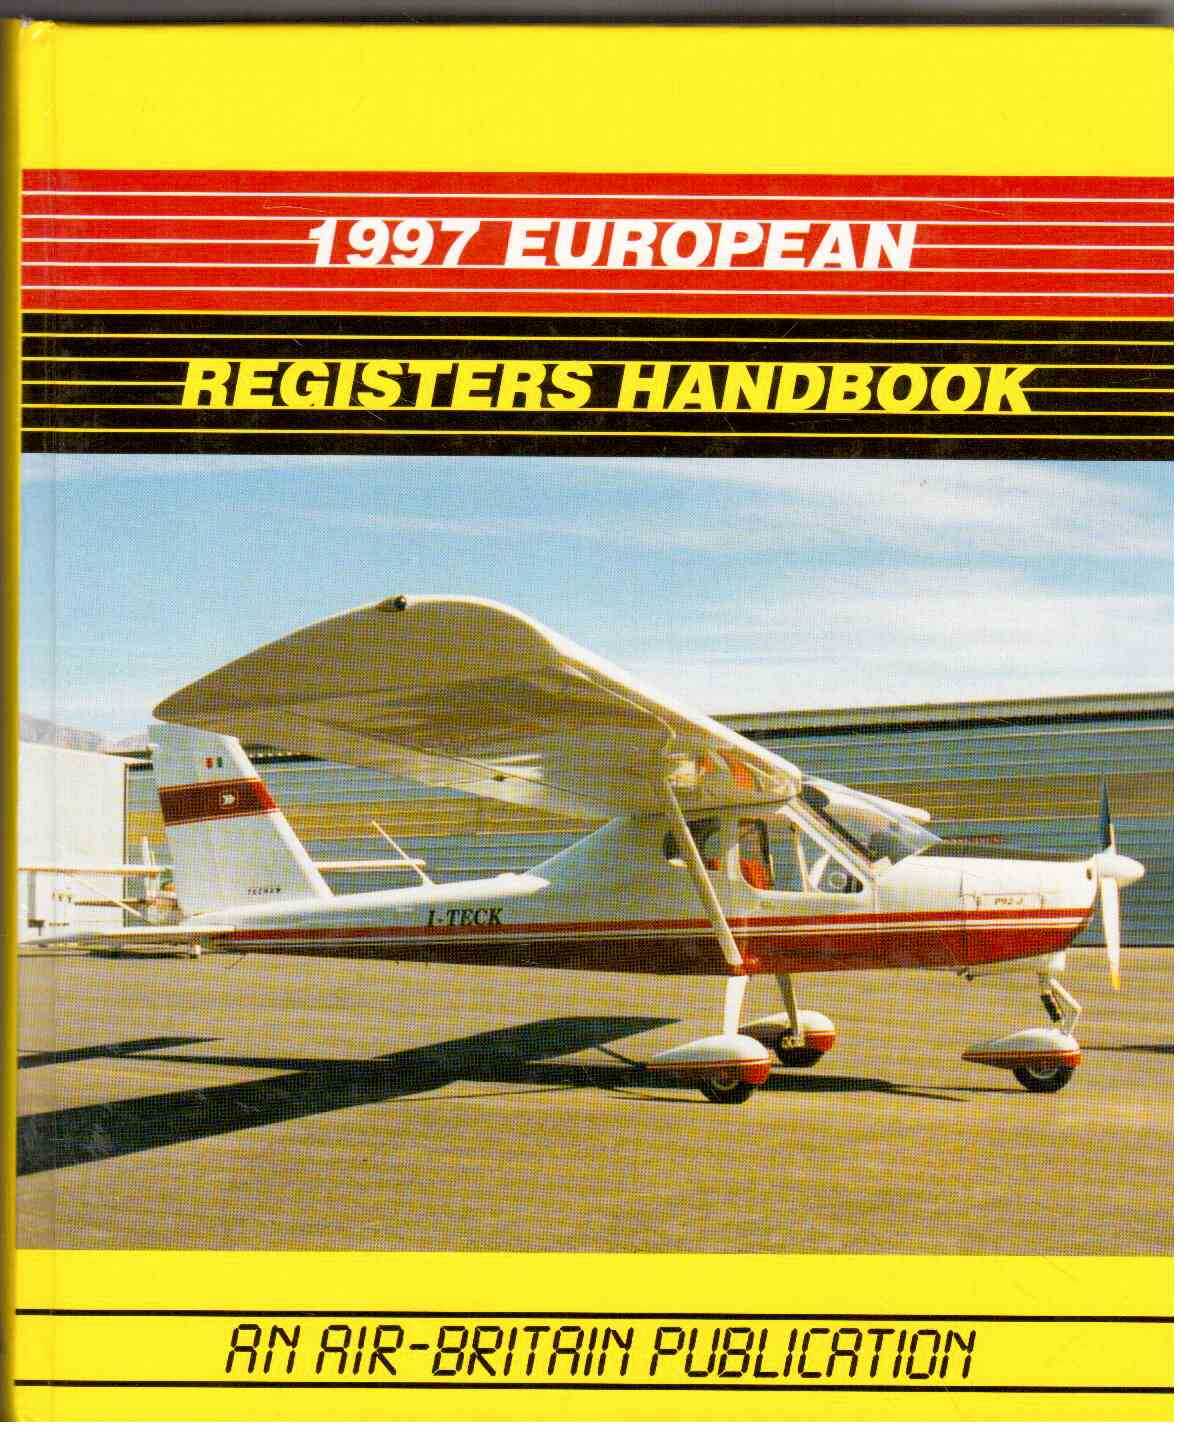 1997 European Registers Handbook. An Air Britain Publication.